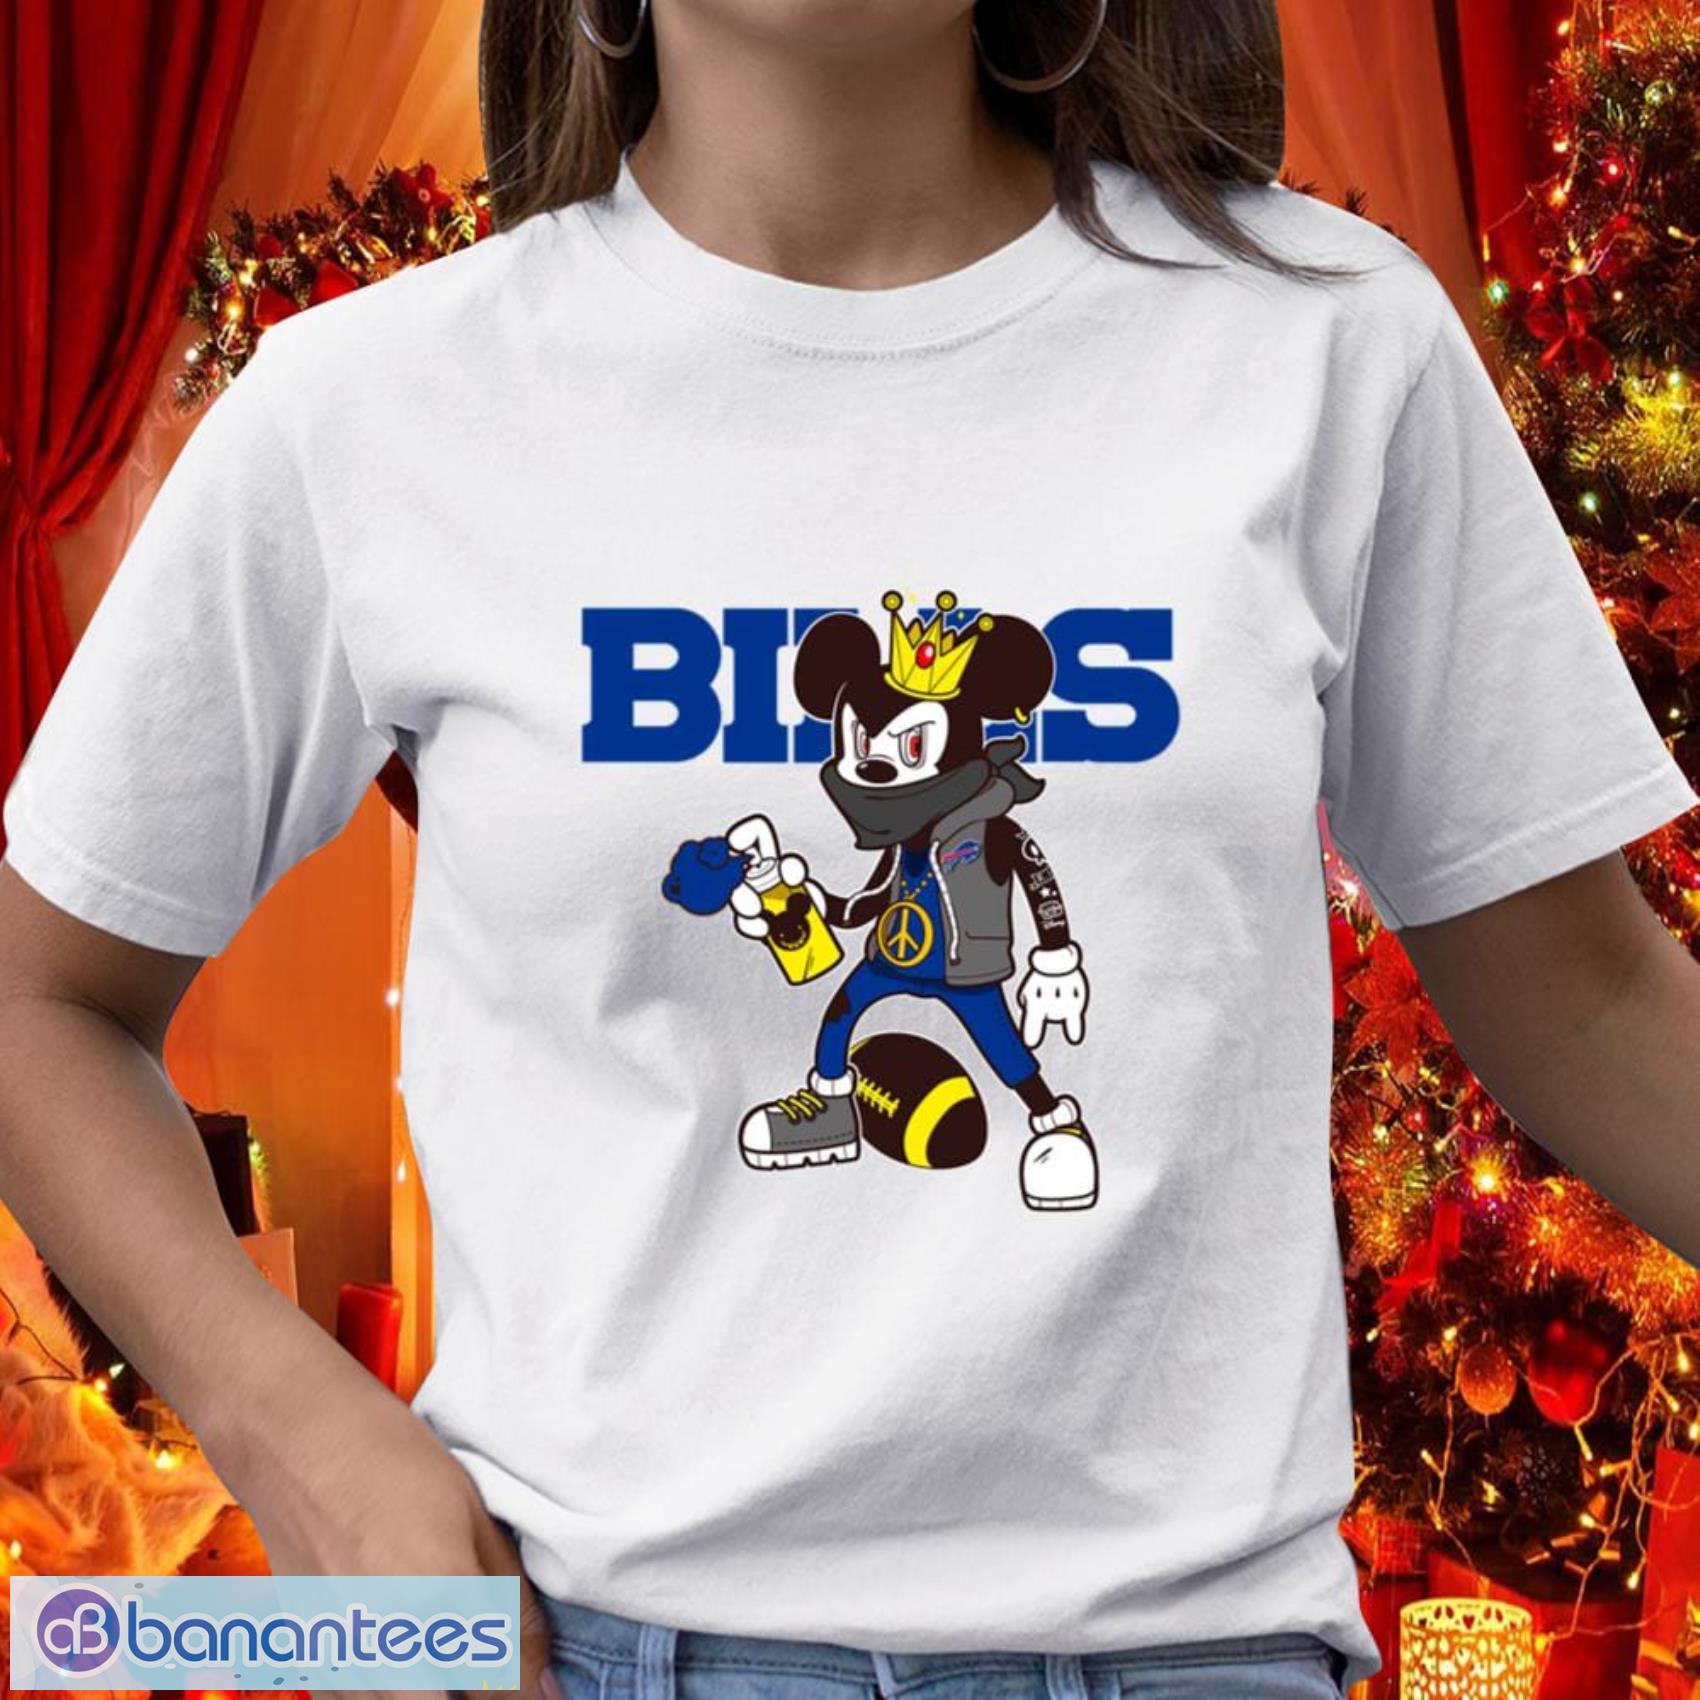 Buffalo Bills NFL Football Gift Fr Fans Mickey Peace Sign Sports T Shirt - Buffalo Bills NFL Football Mickey Peace Sign Sports T Shirt_1